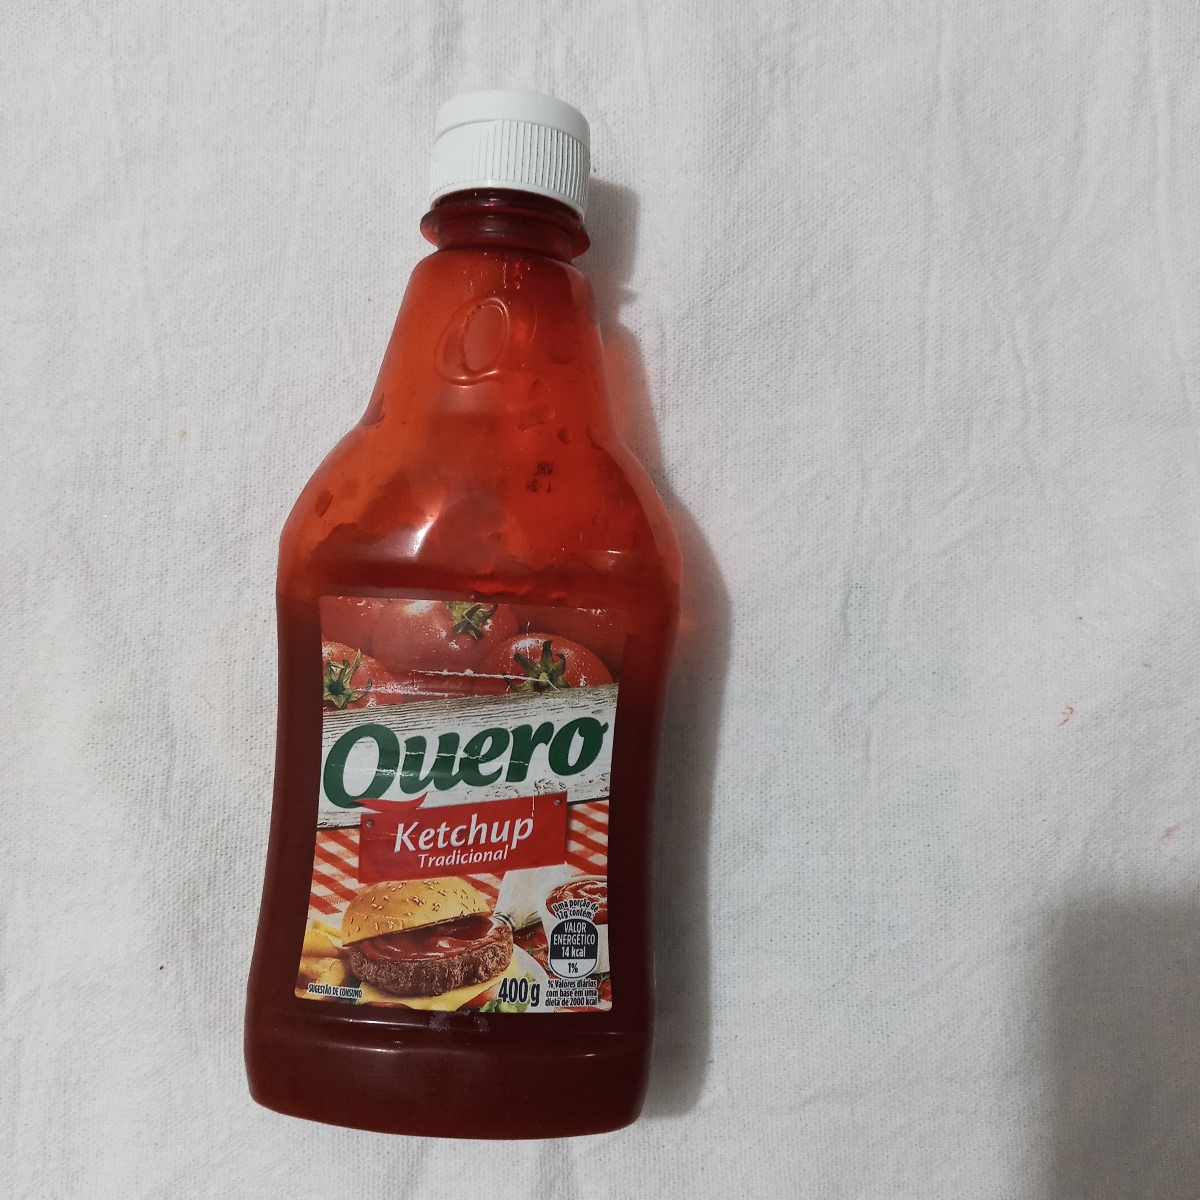 Quero Ketchup Tradicional Review | abillion